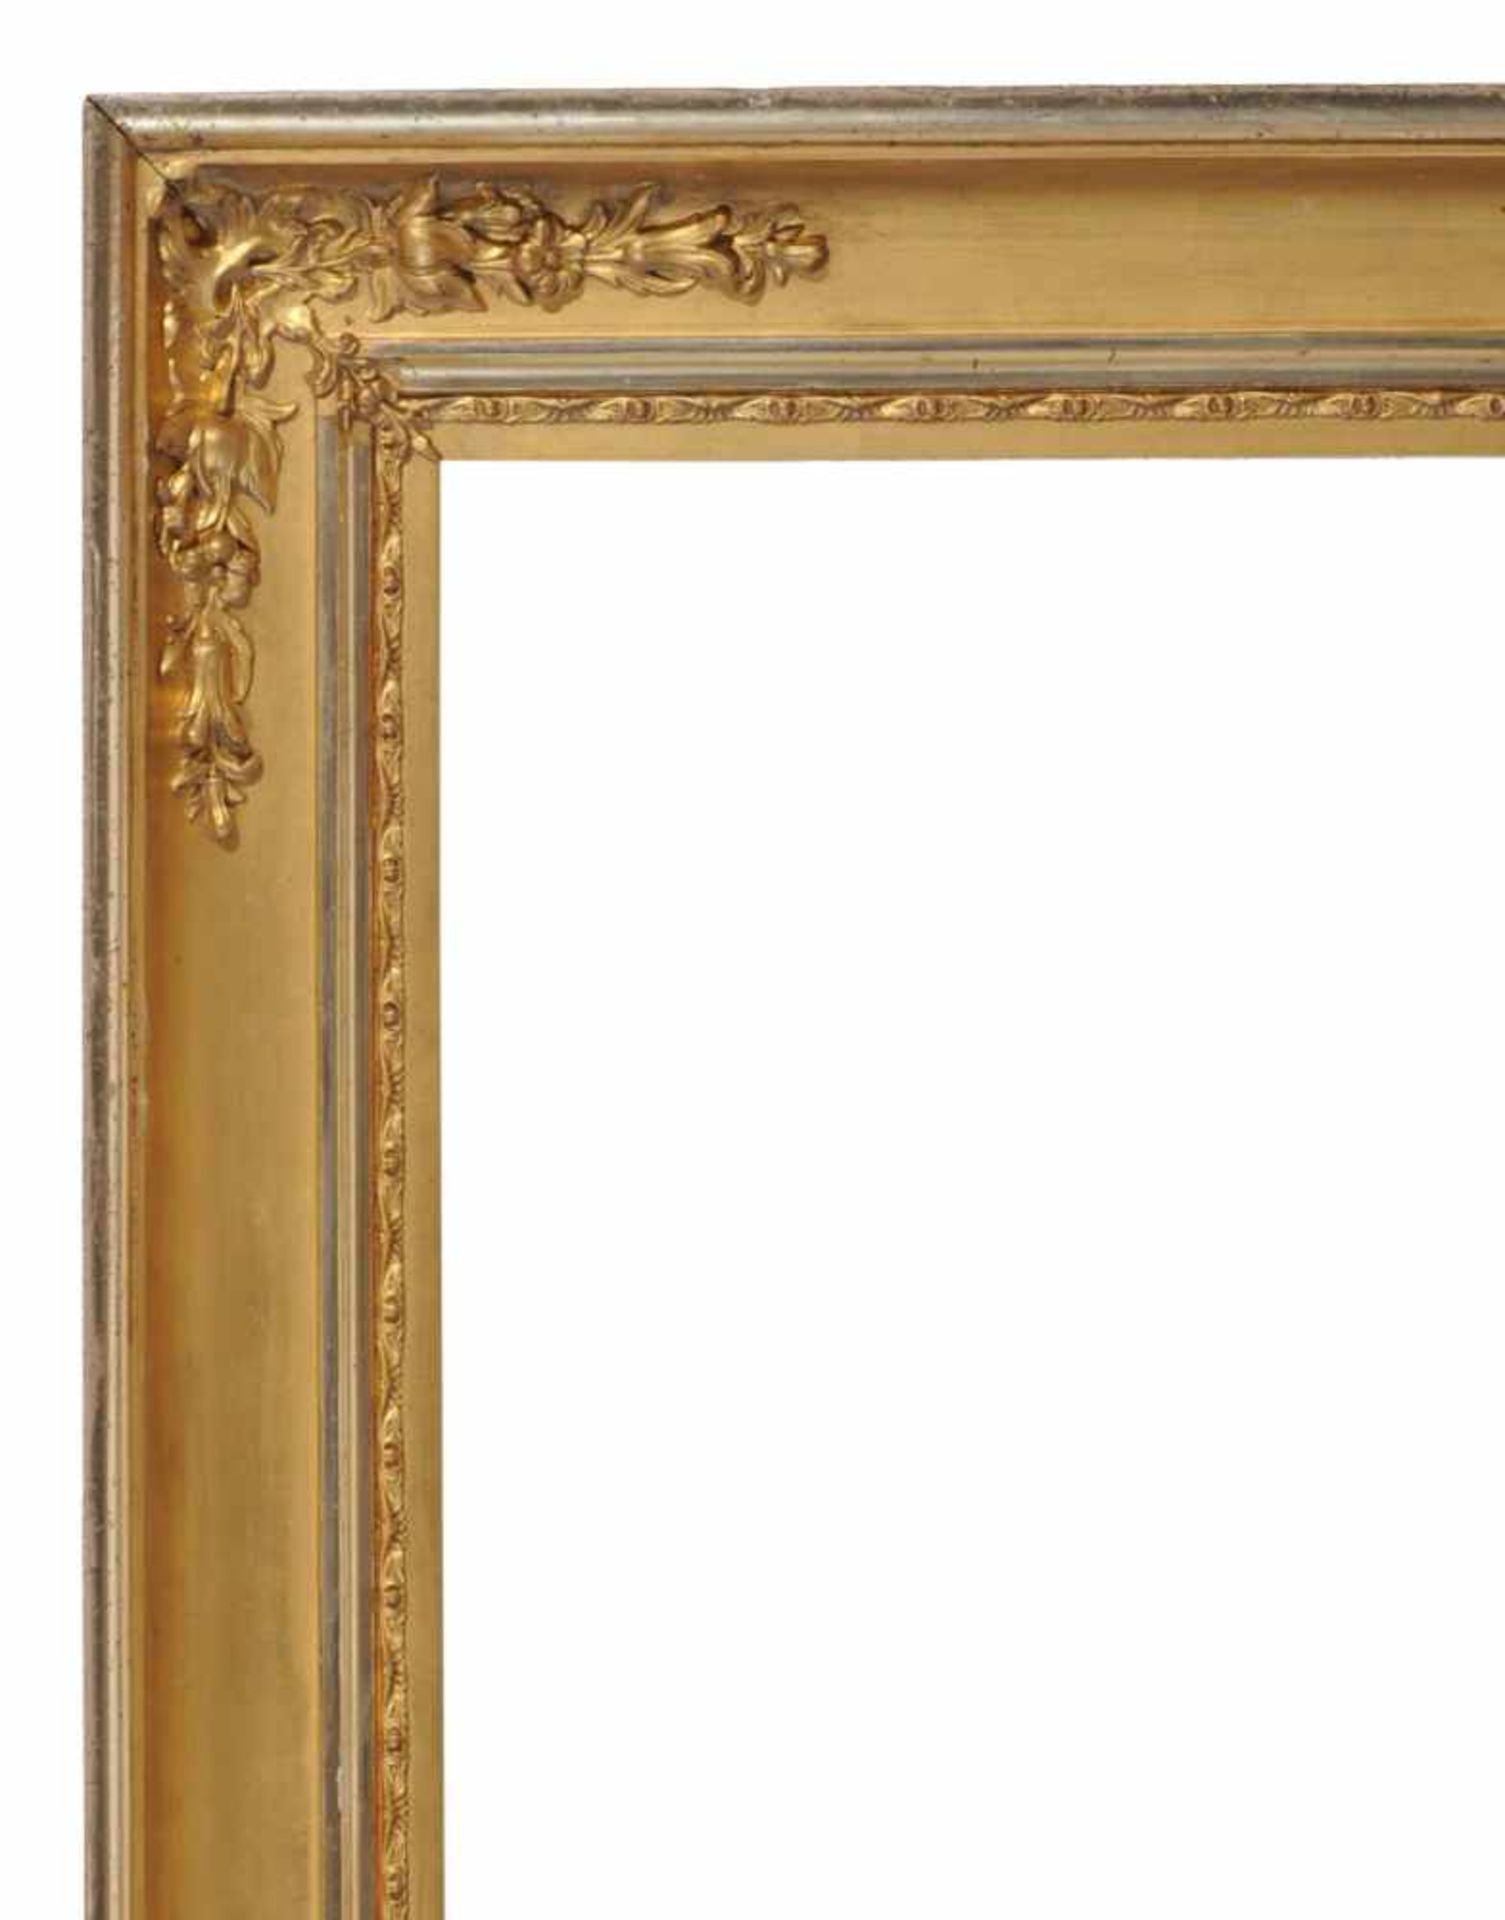 Breiter profilierter Rahmen. Wohl 2. H. 19. Jh. Holz, masseverziert, vergoldet und versilbert. - Bild 3 aus 3